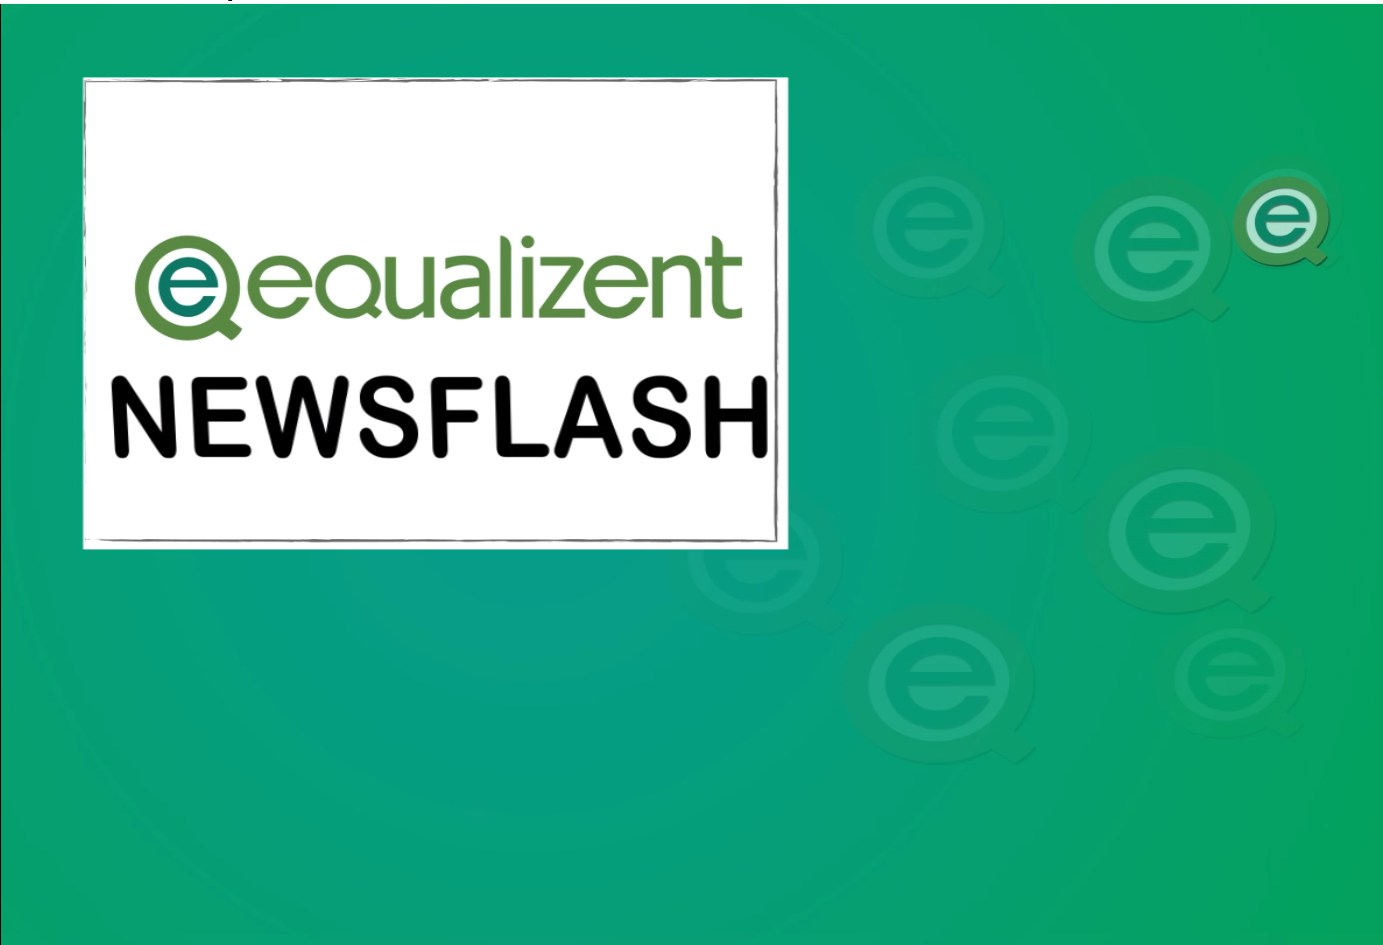 Grüner Hintergrund mit equalizent Logos. in einem weißen Kasten sieht man den Schriftzug "equalizent Newsflash"